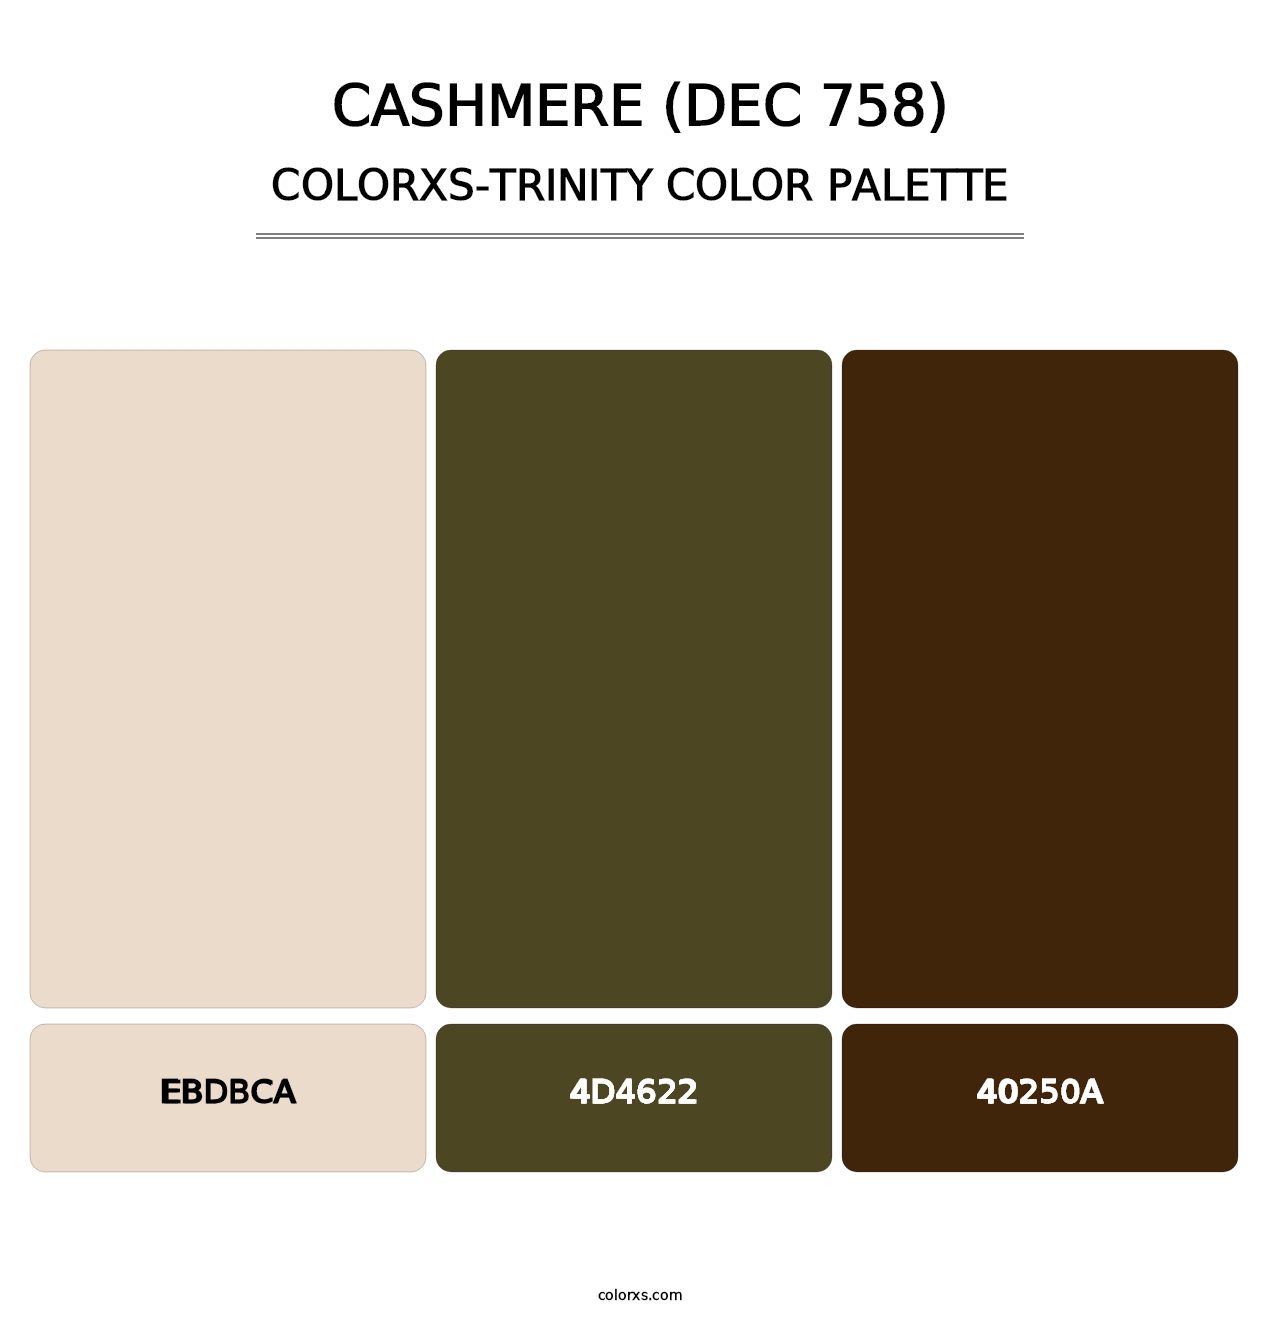 Cashmere (DEC 758) - Colorxs Trinity Palette